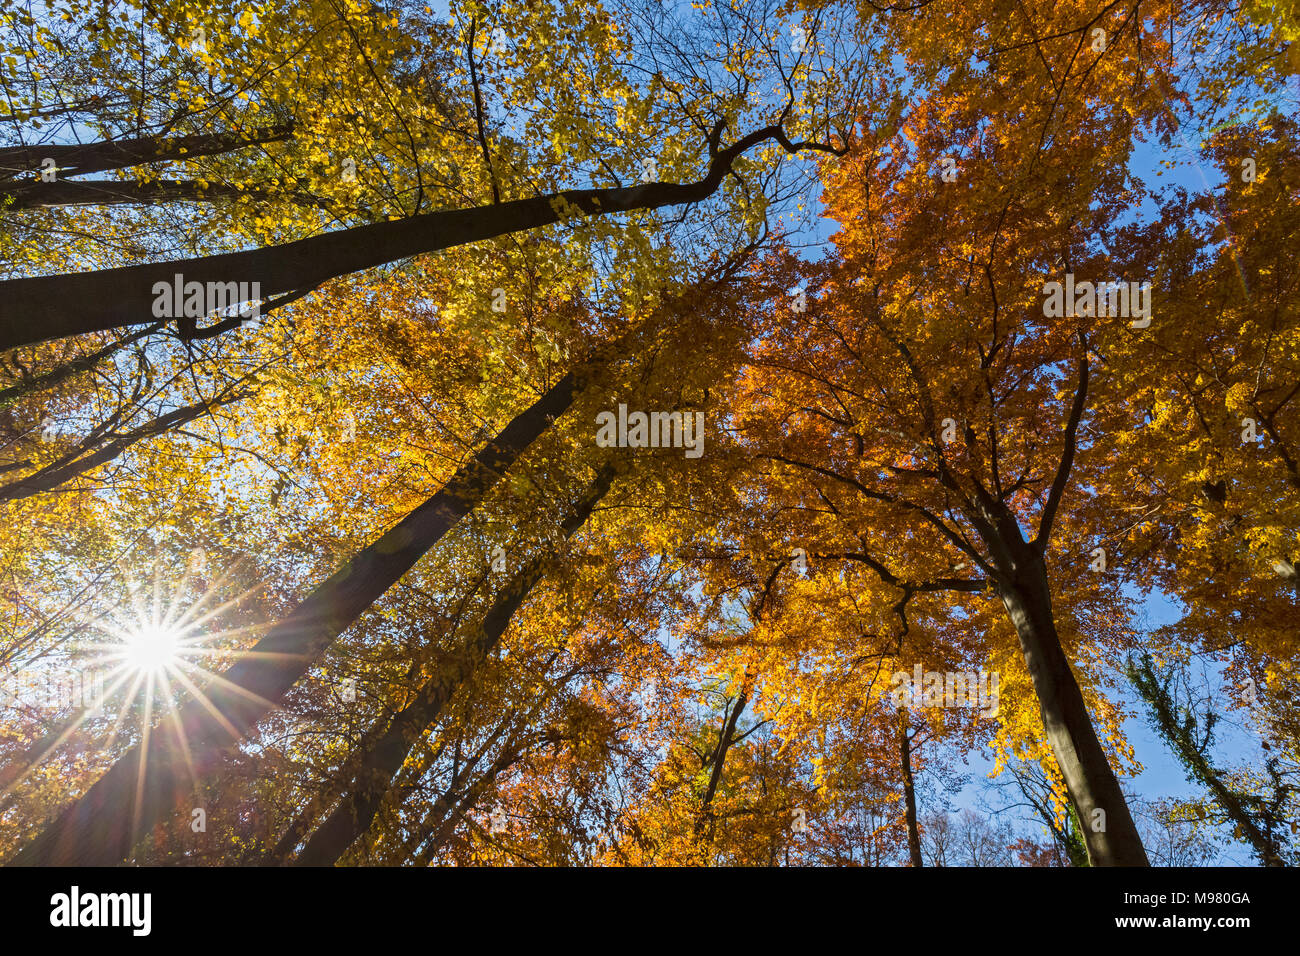 Alemania, Baviera, Munich, árboles de hoja caduca en otoño Foto de stock